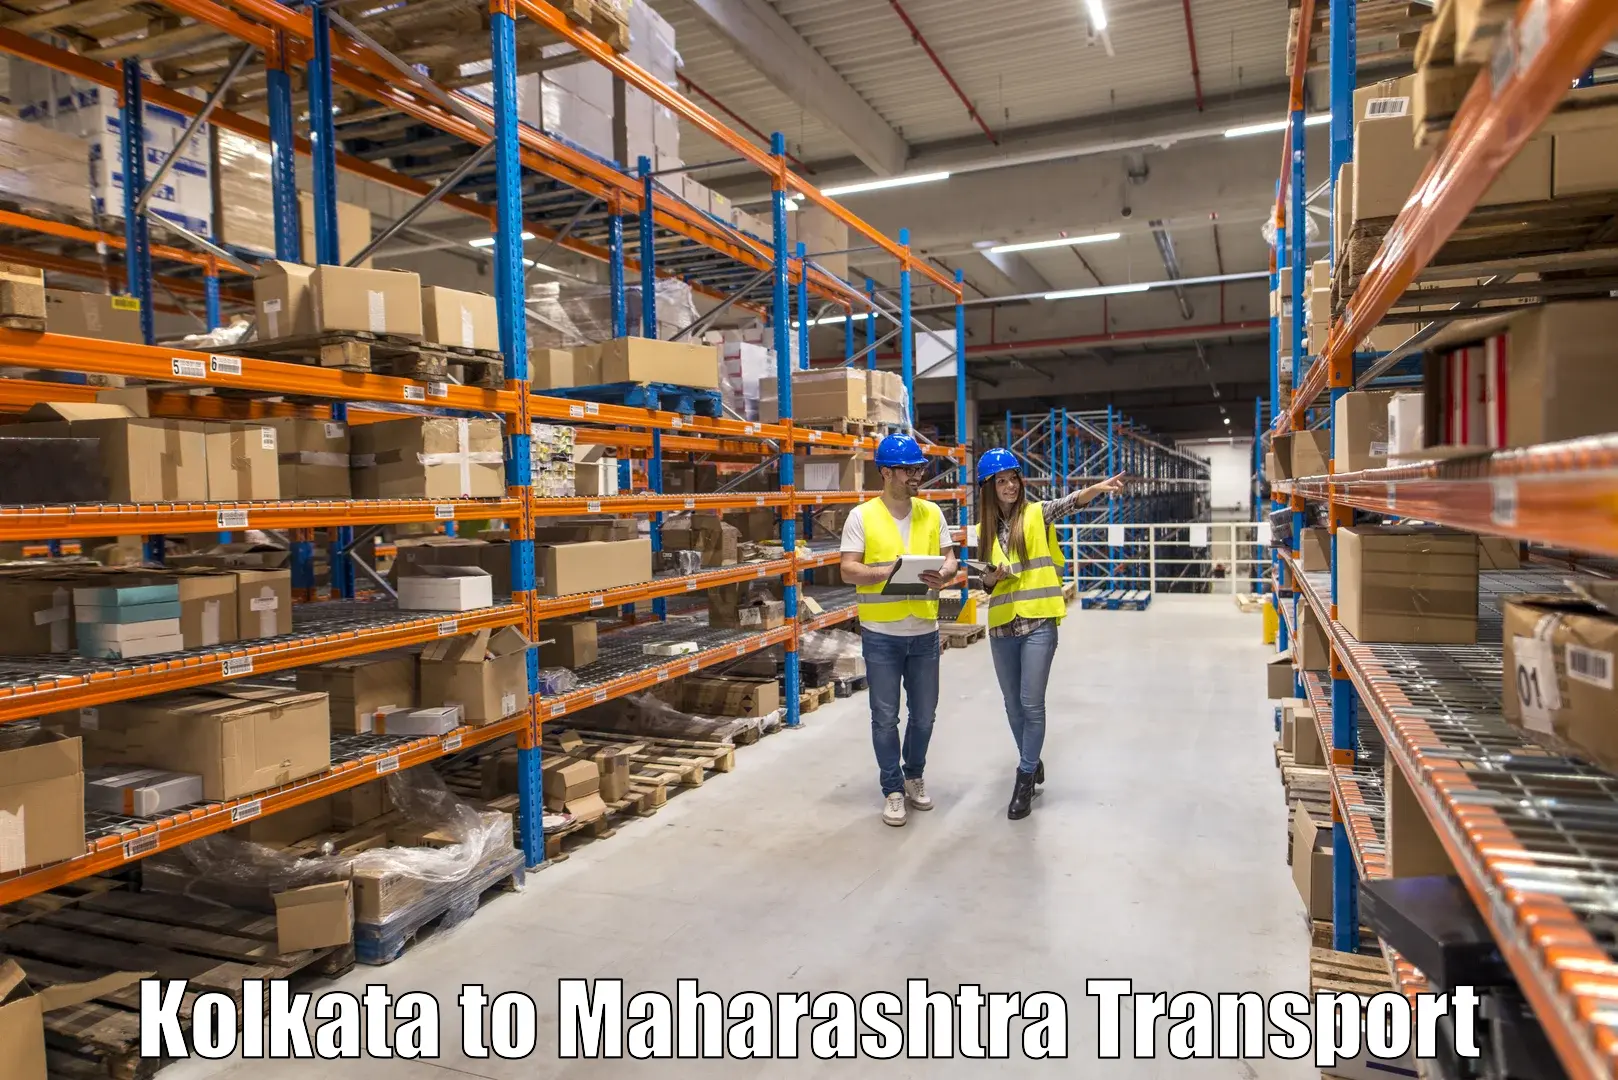 Commercial transport service Kolkata to Dharni Amravati